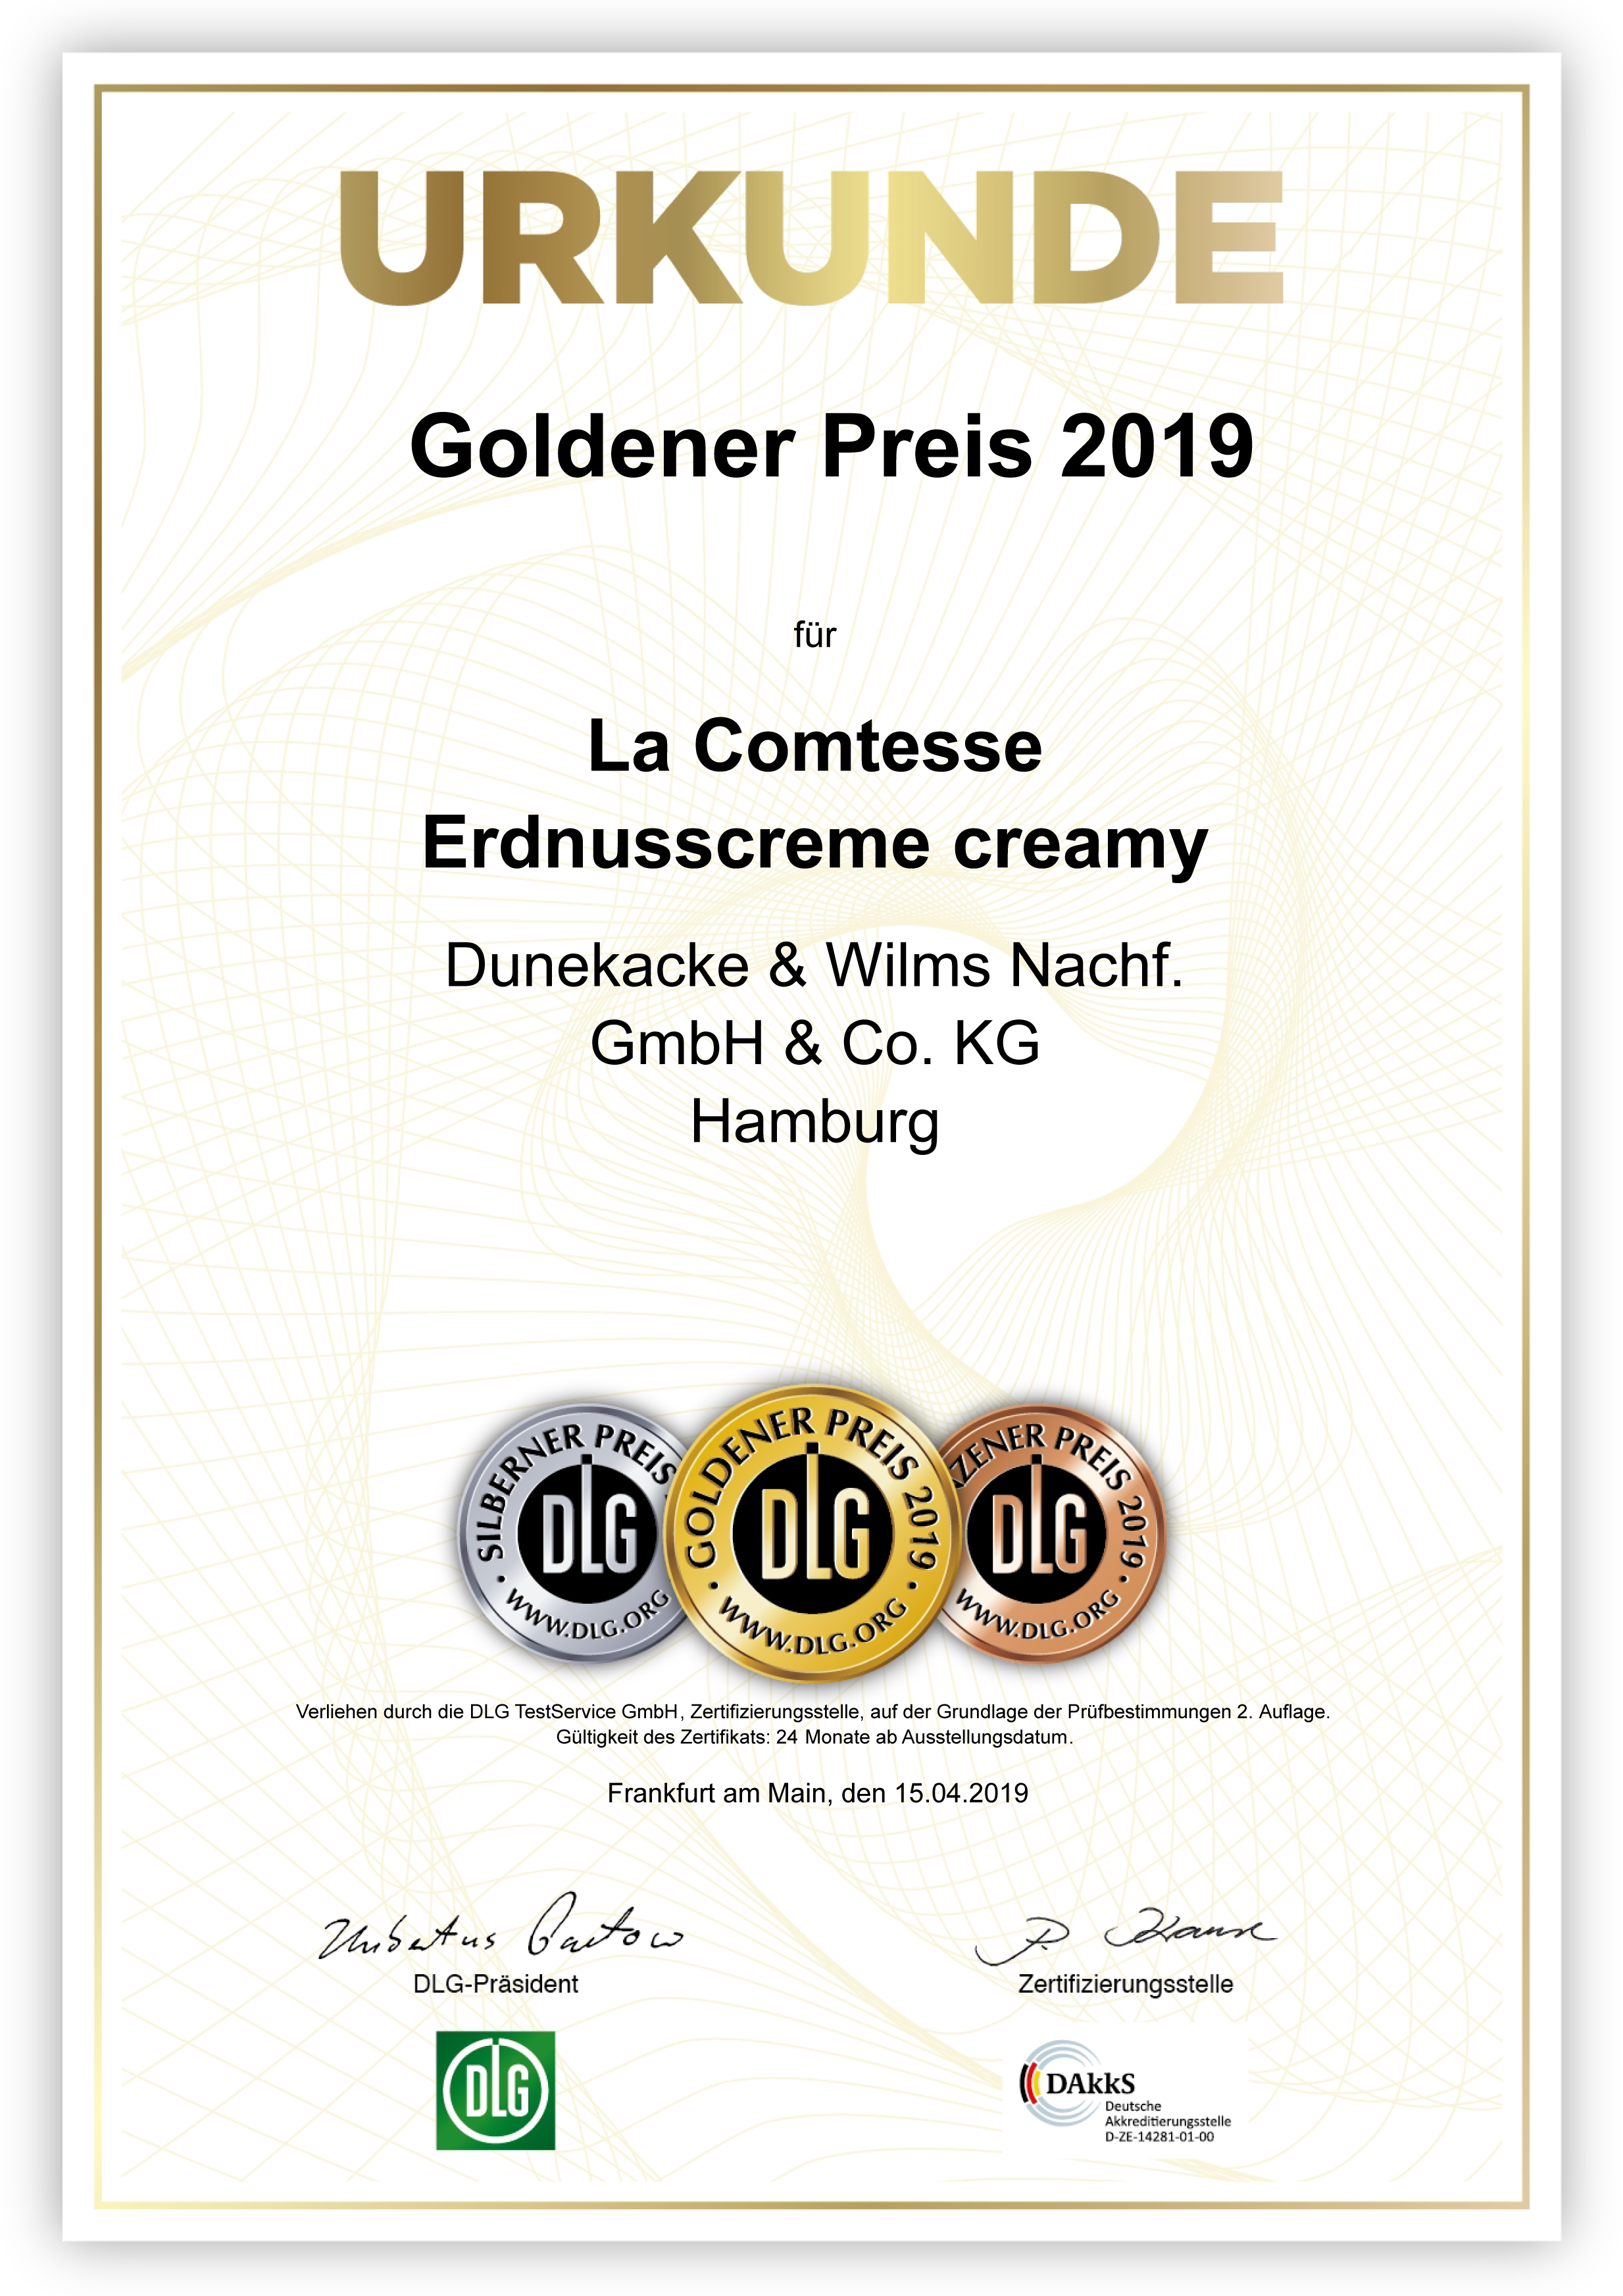 DLG-Pramierung GOLD, Erdnusscreme creamy 2019